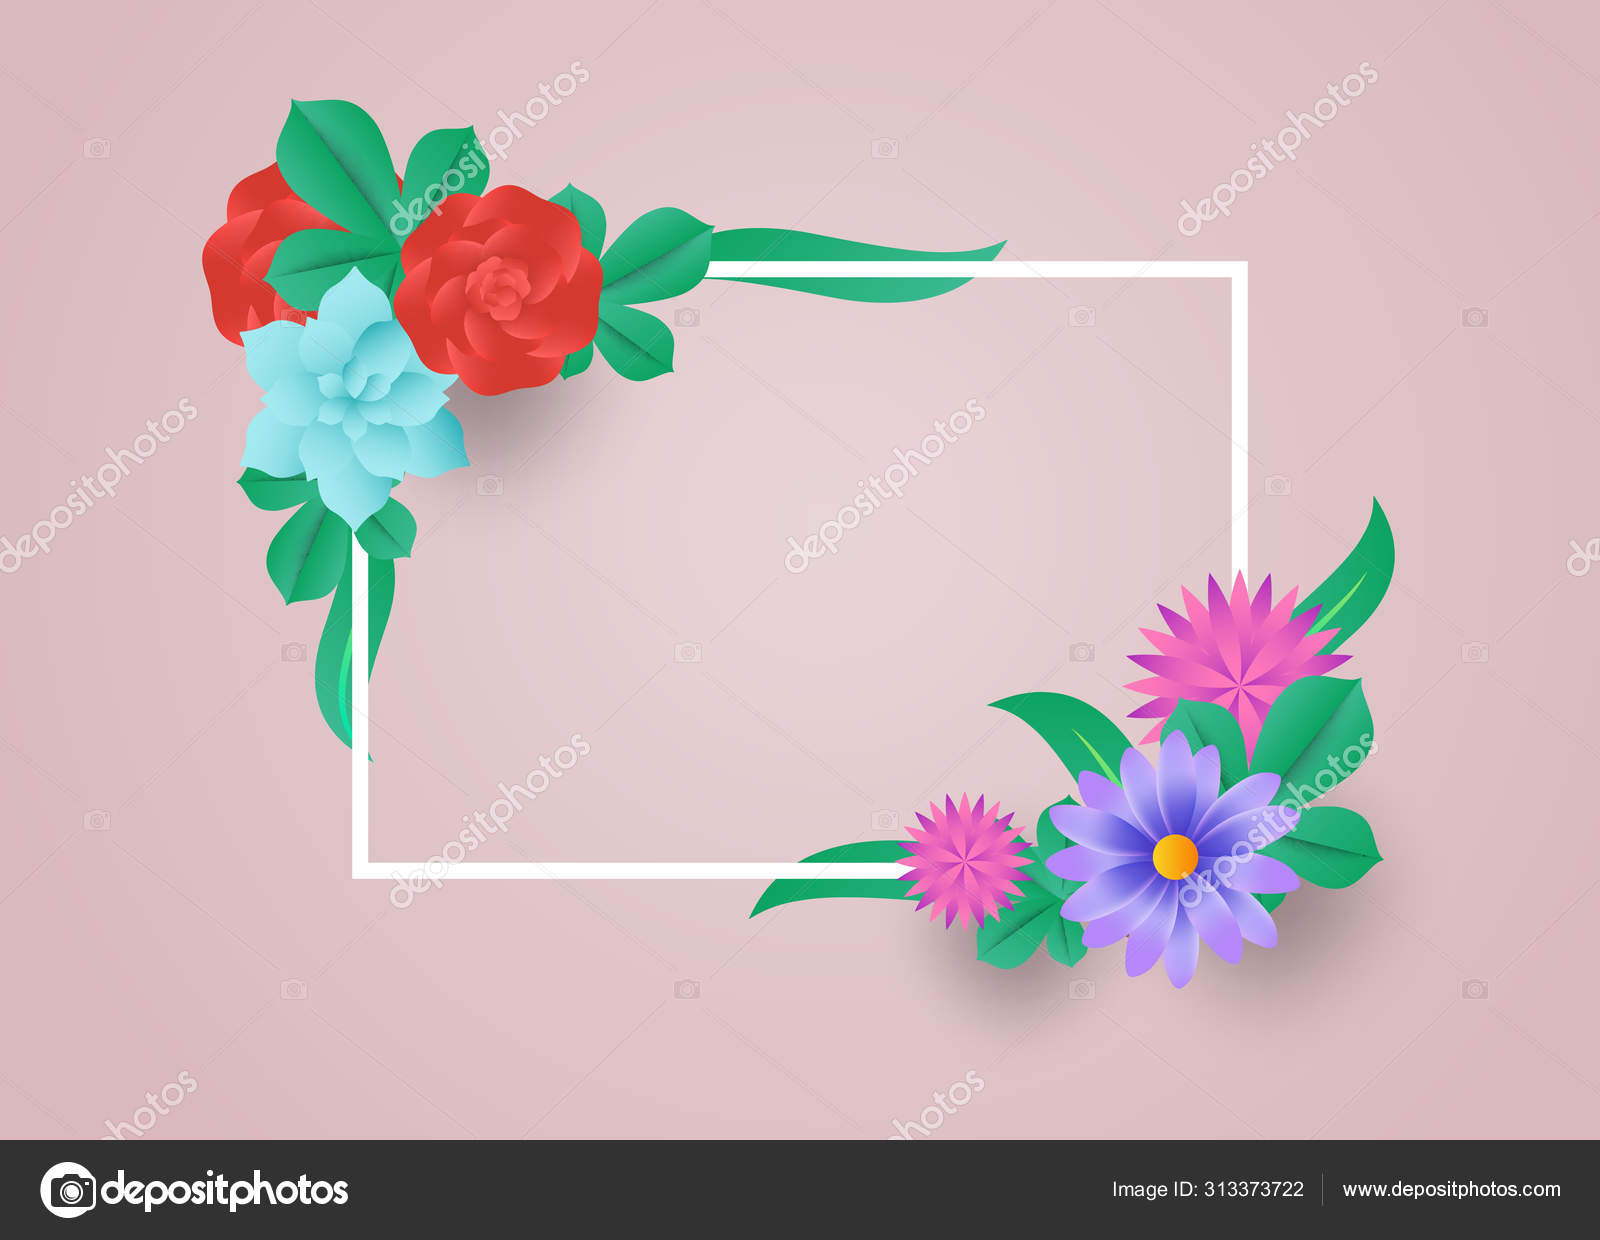 Flores coloridas com estilo de corte de papel de moldura imagem vetorial de  © tulpahn #313373722